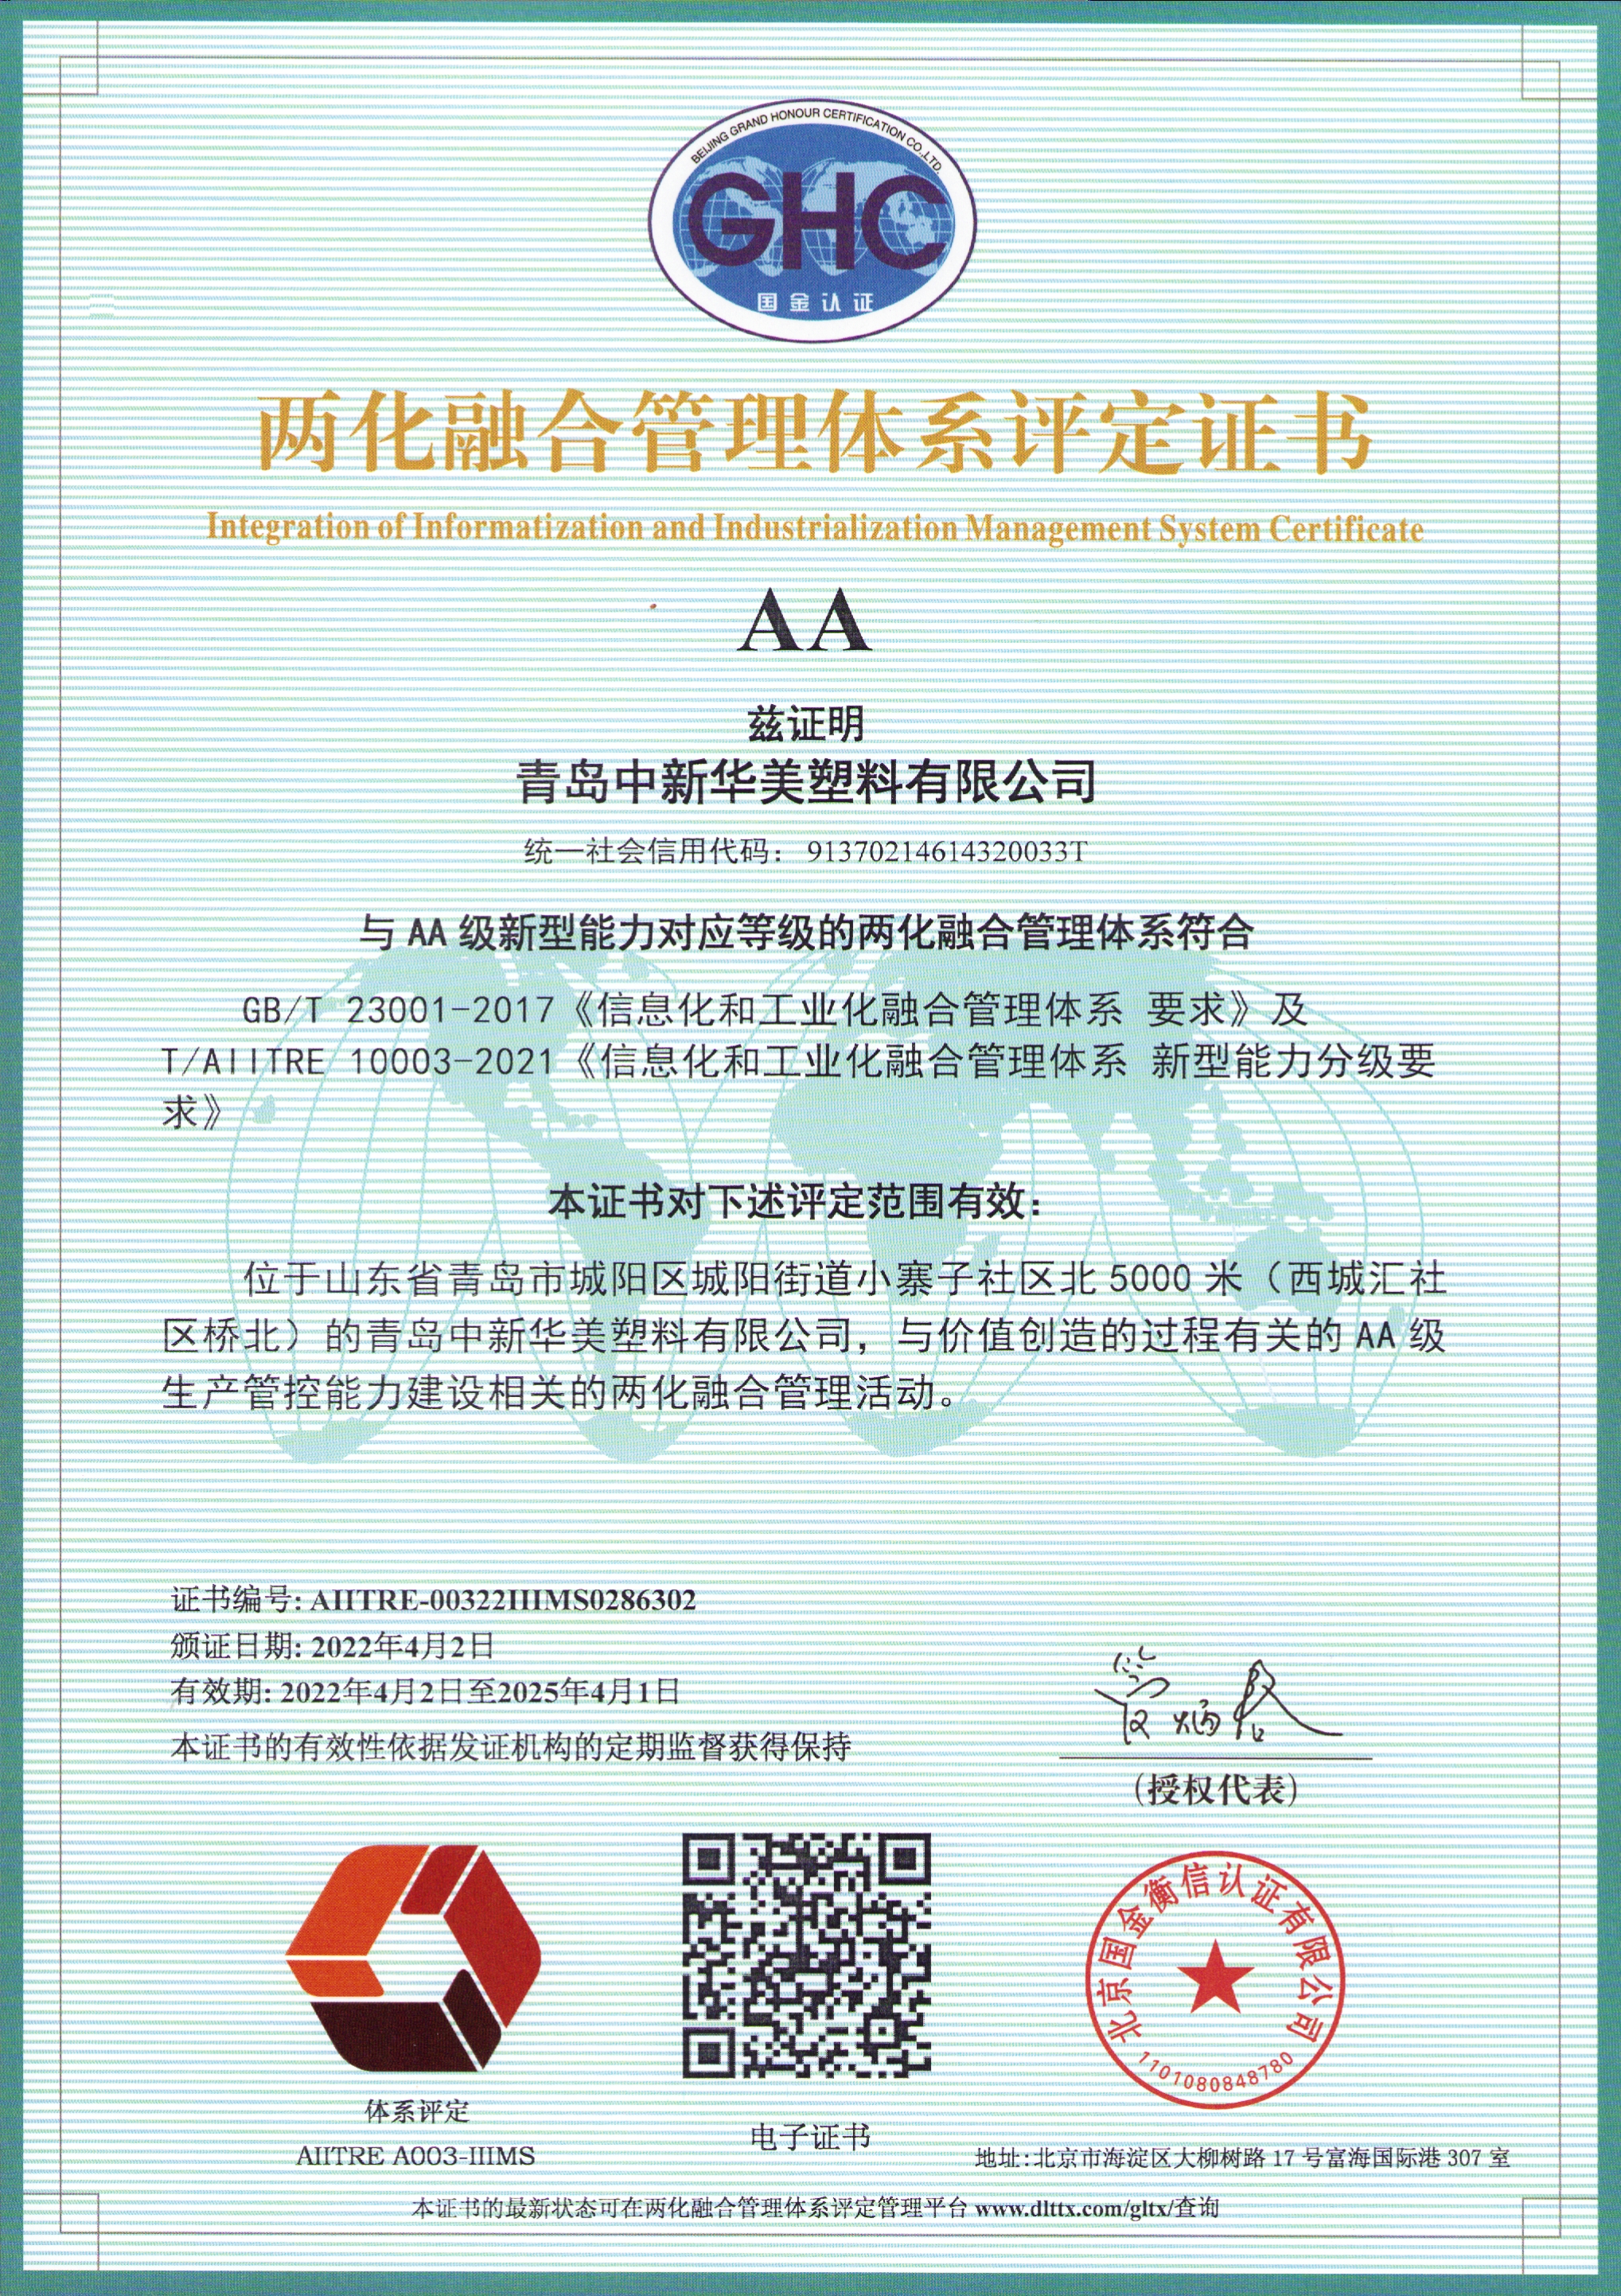 青岛中新华美塑料有限公司顺利通过国家工信部aa级两化融合管理体系认证